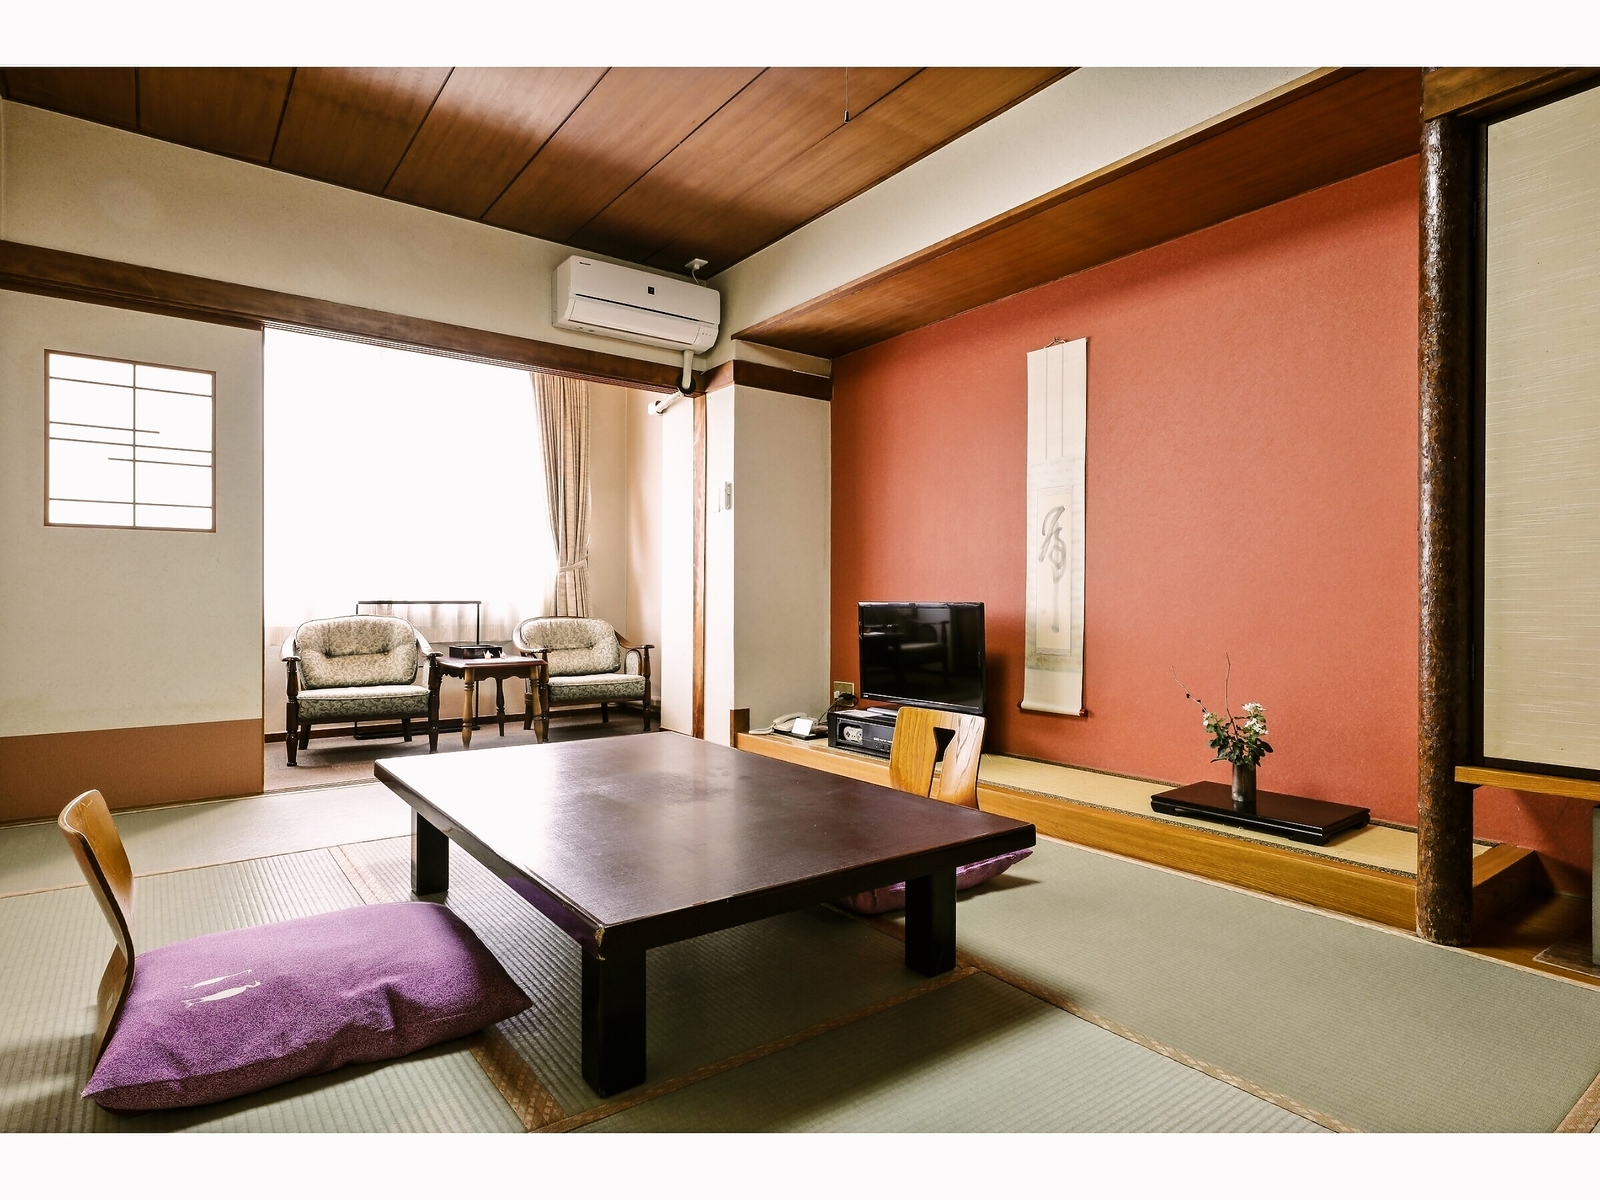 日式房間7.5-8張榻榻米(房間內沒有浴室，帶有廁所)有餐廳